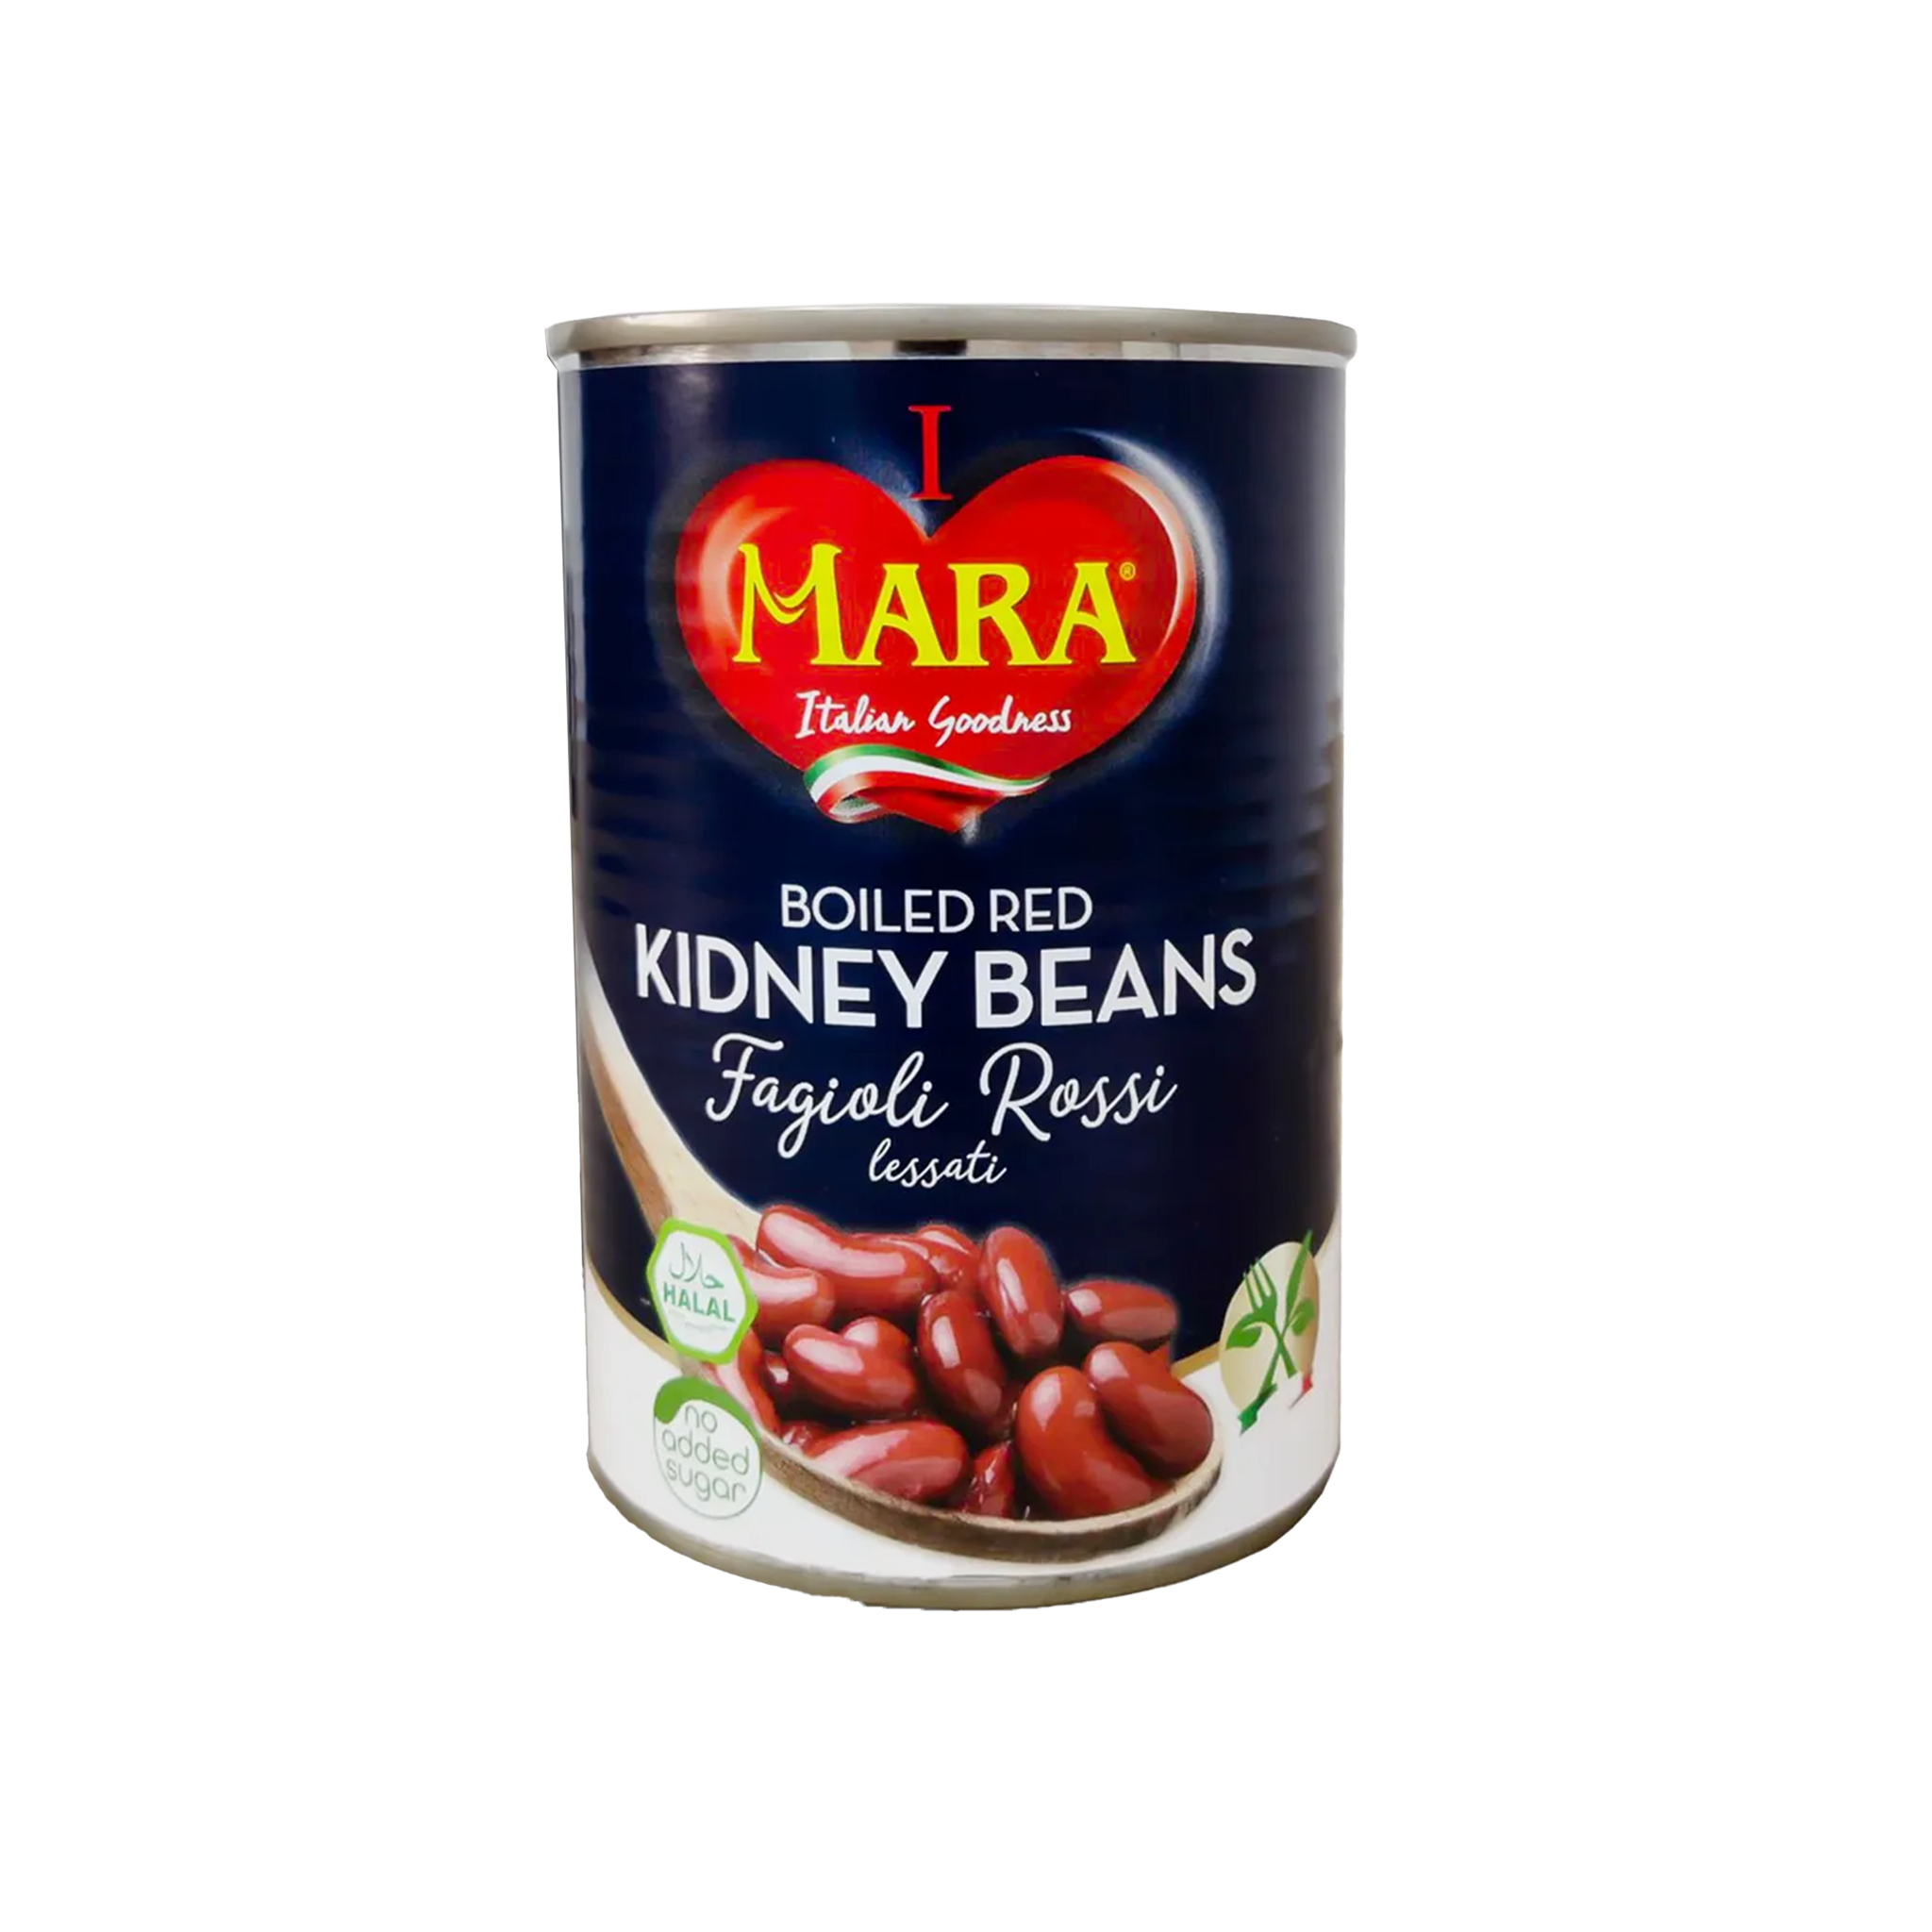 Mara Red Kidney Beans 400g